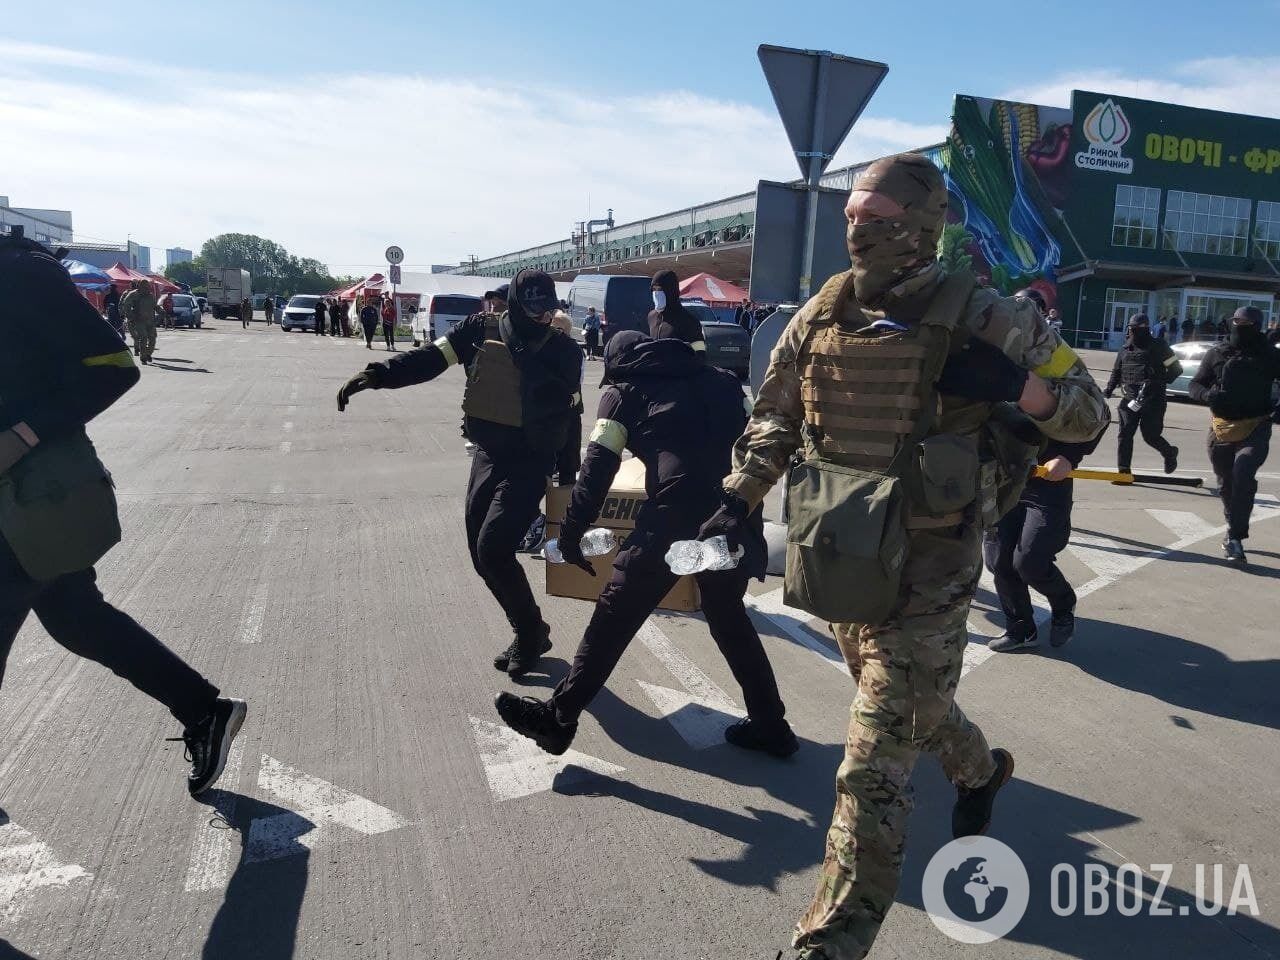 Вооруженные титушки проникли на рынок "Столичный": прибыл спецназ полиции и Нацгвардия. Все детали, фото и видео